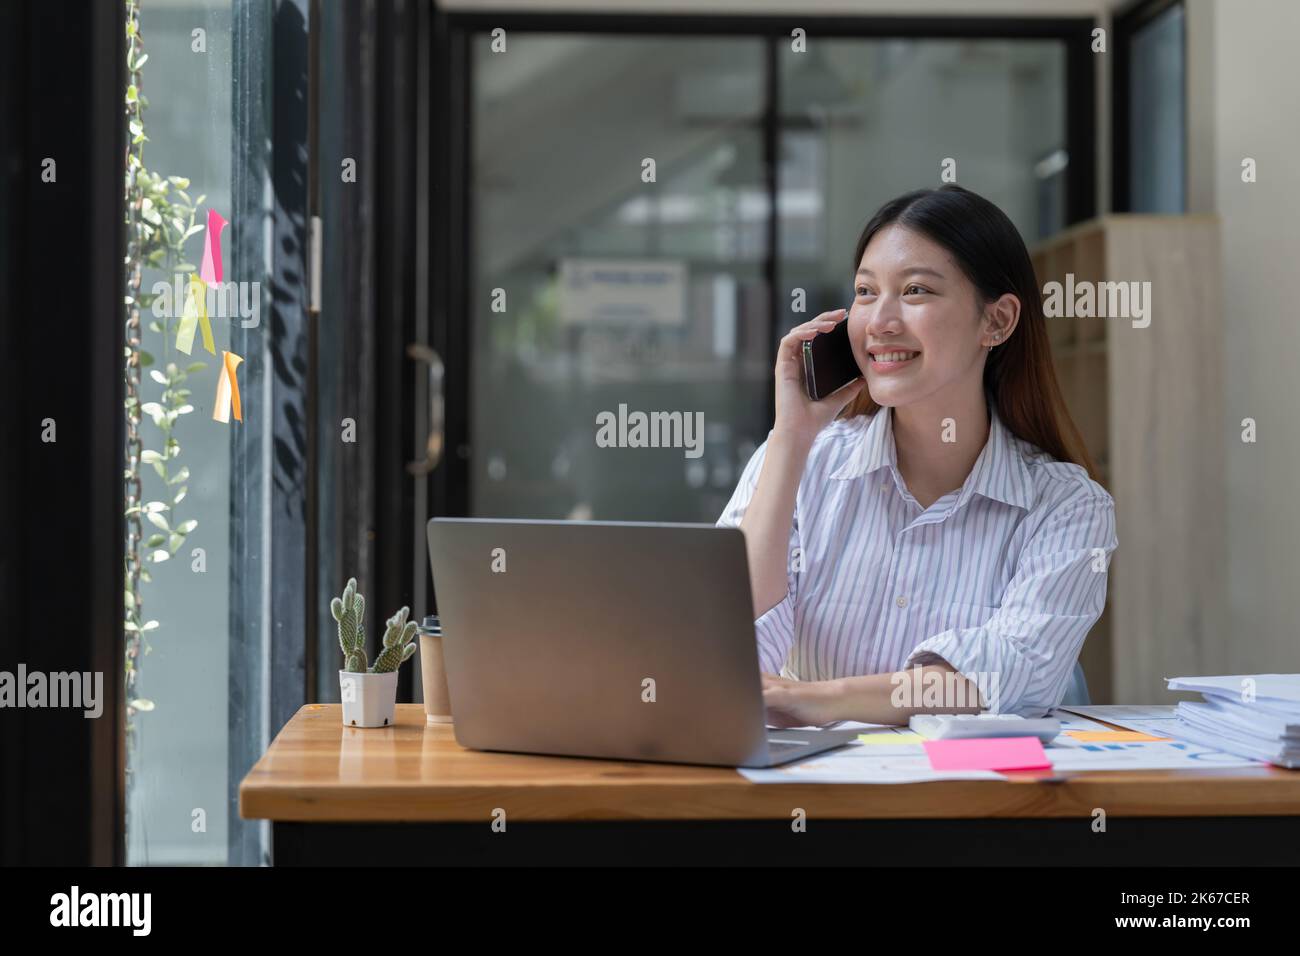 Glückliche junge asiatische Frau, die am Mobiltelefon spricht und lächelt, während sie an ihrem Arbeitsplatz im Büro sitzt. Stockfoto